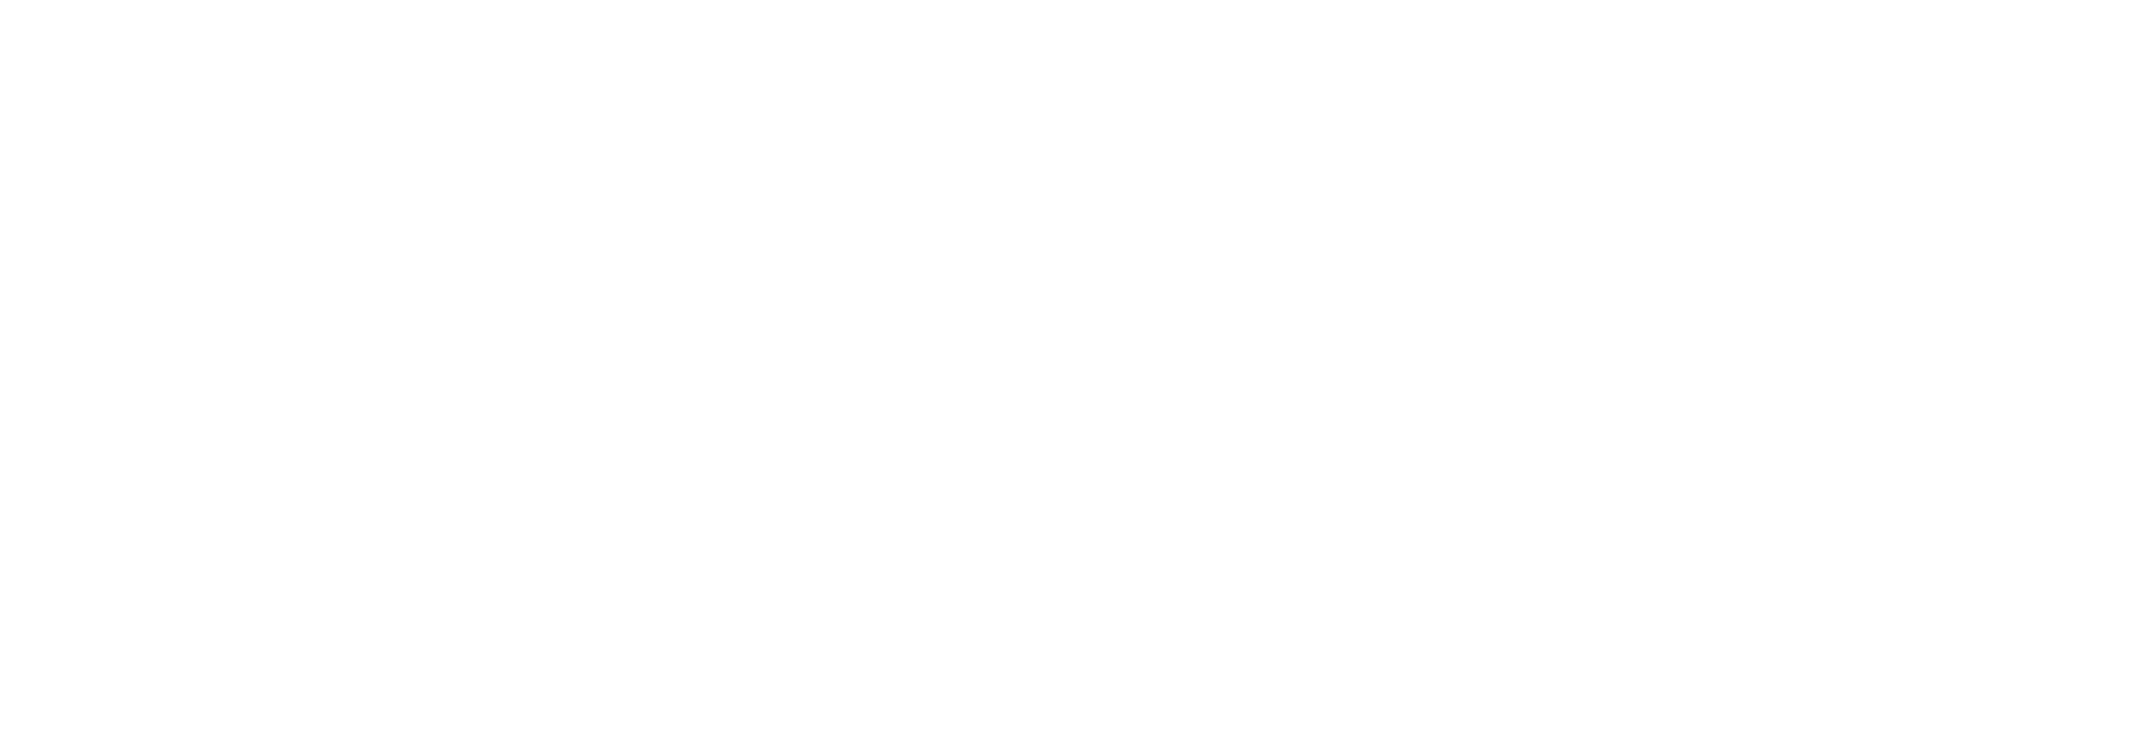 BlogacyLogo white-06